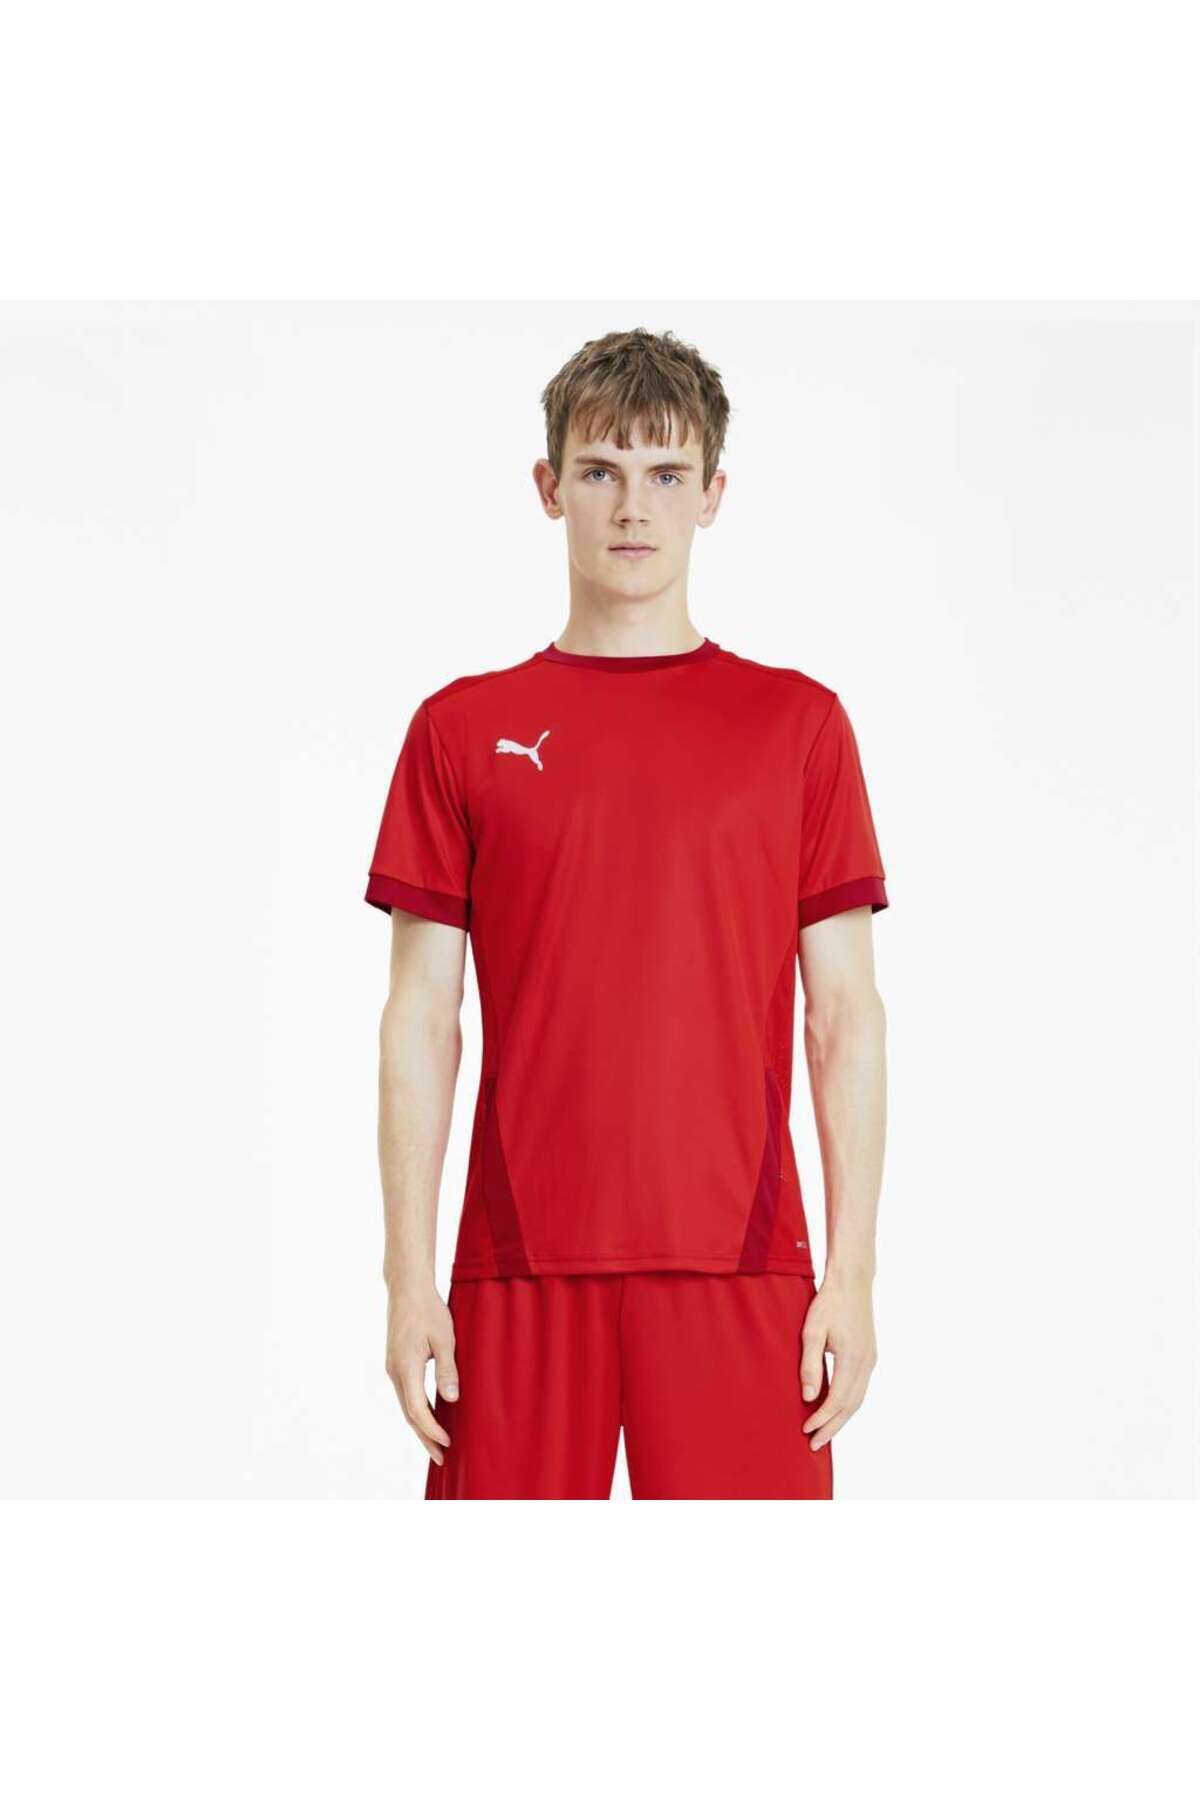 Puma Team Goal 23 Jersey Erkek Kırmızı Yuvarlak Yaka Tişört